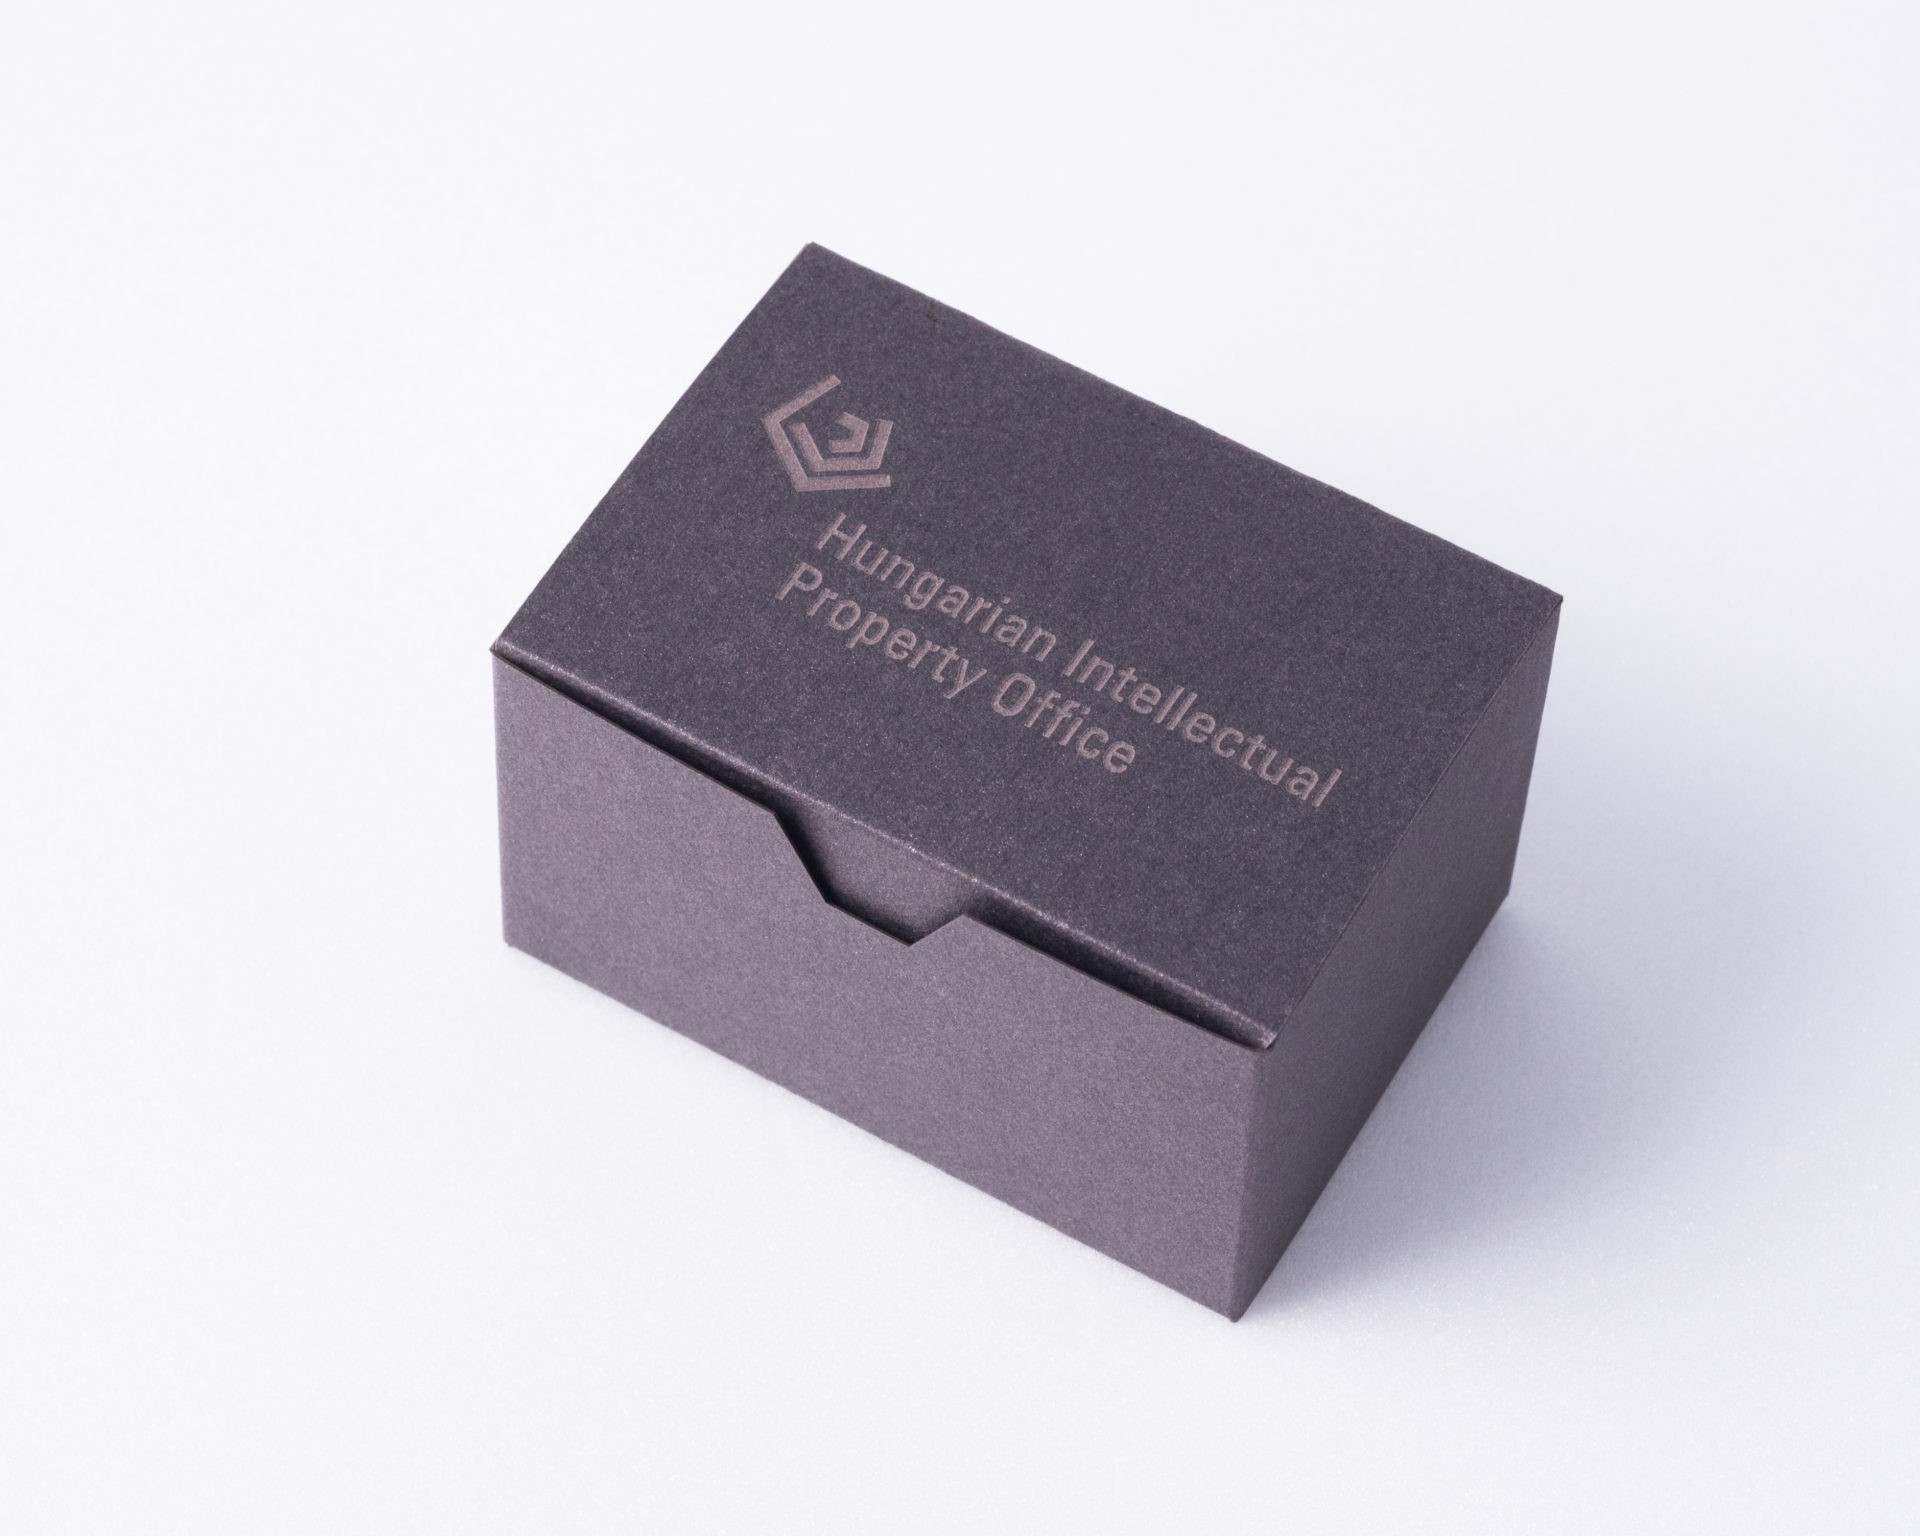 ARCHICON céges ajándékok betonból, egyedi logóval ellátható csomagolásban